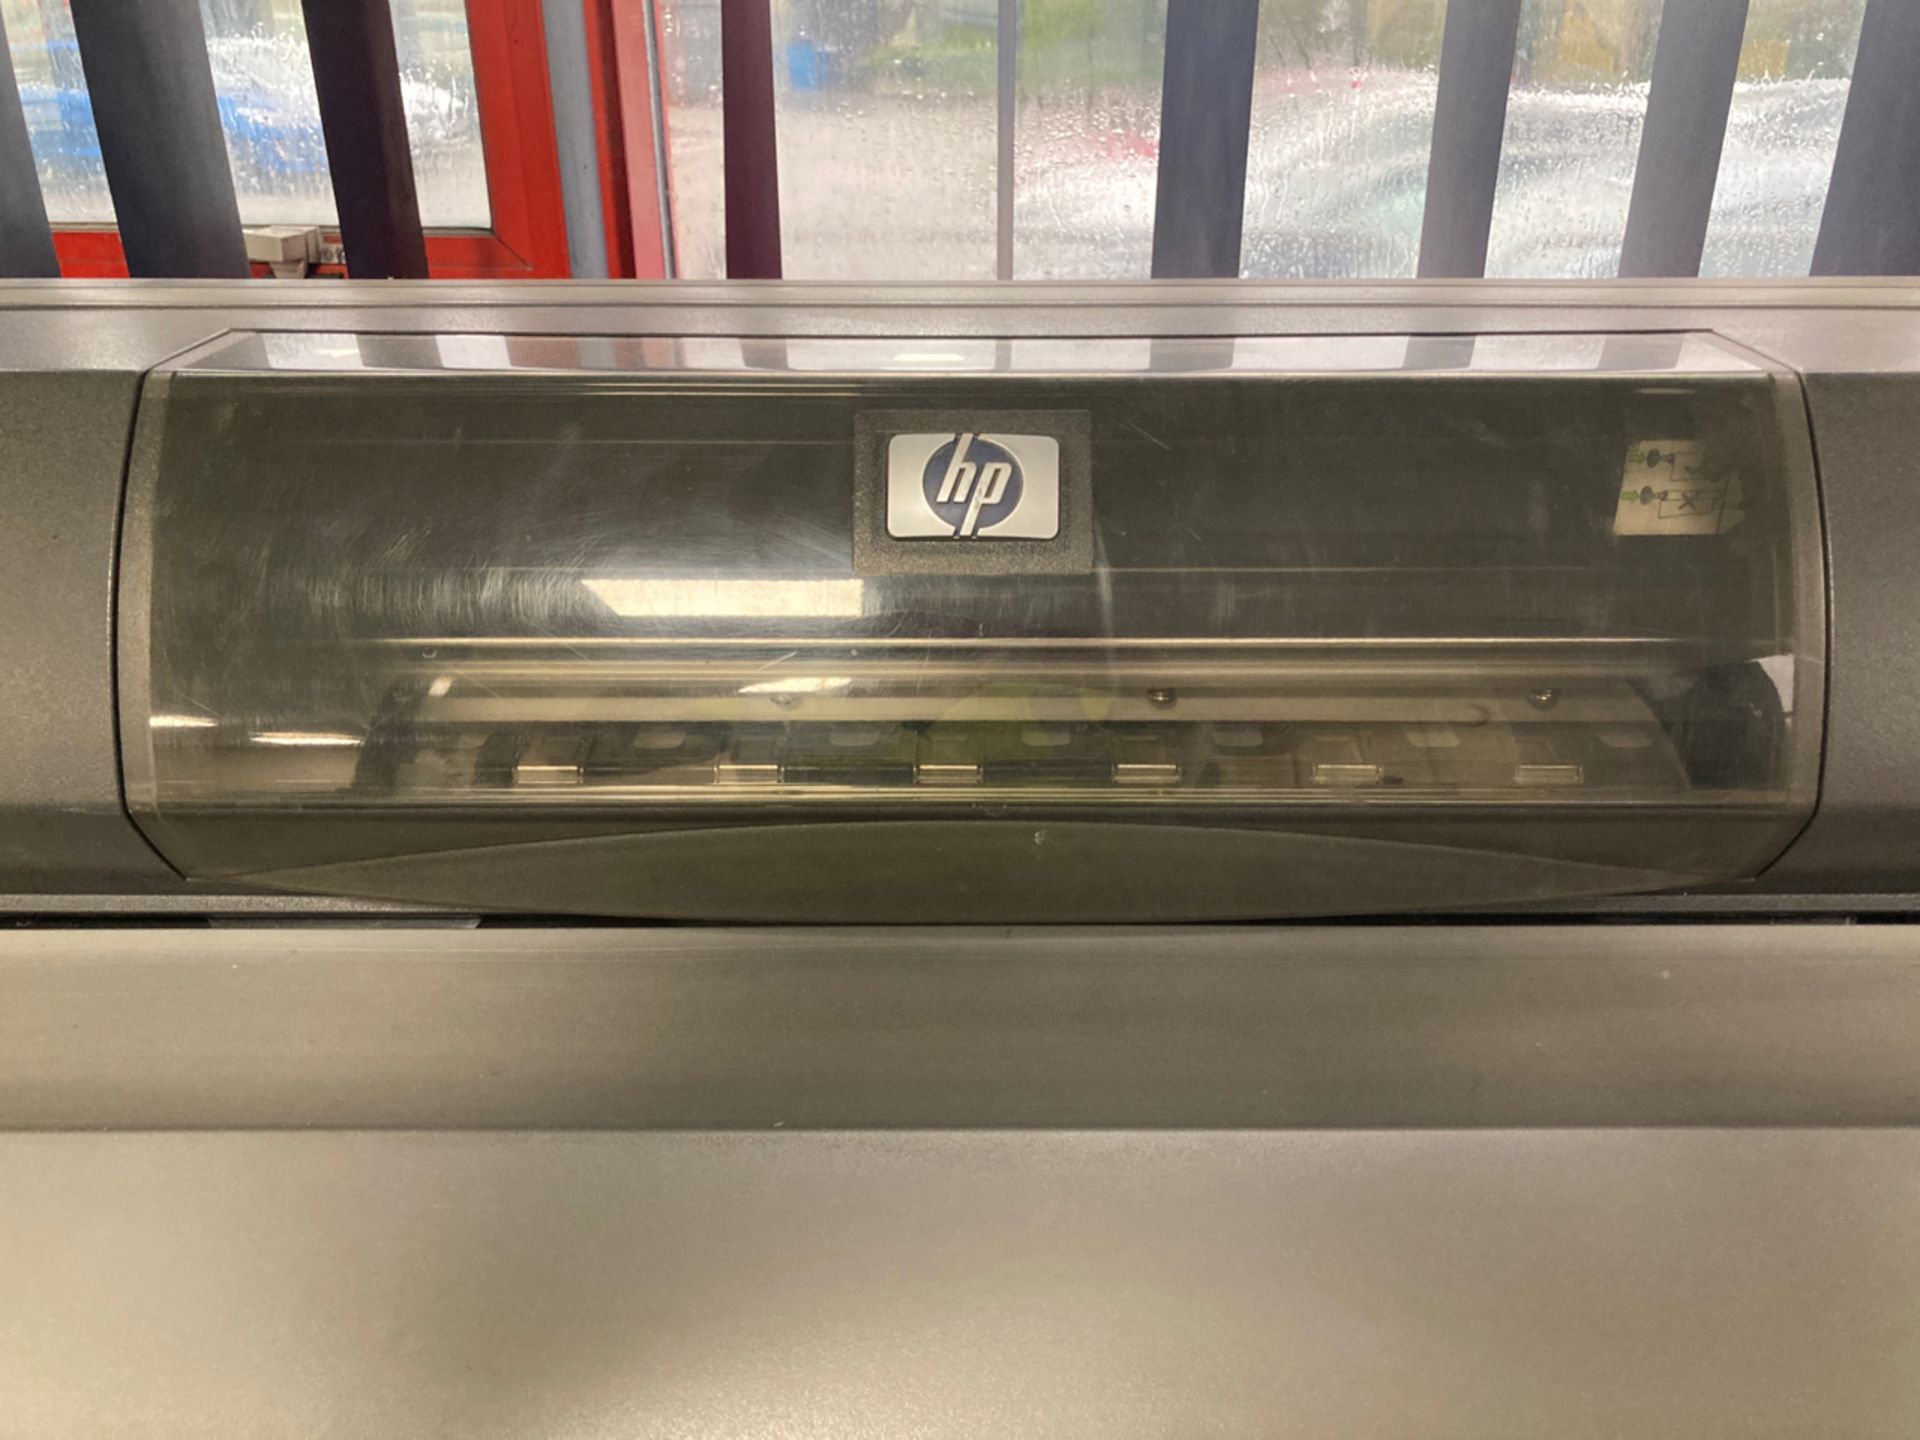 HP Designjet 5500 Large Format Printer - Image 5 of 8